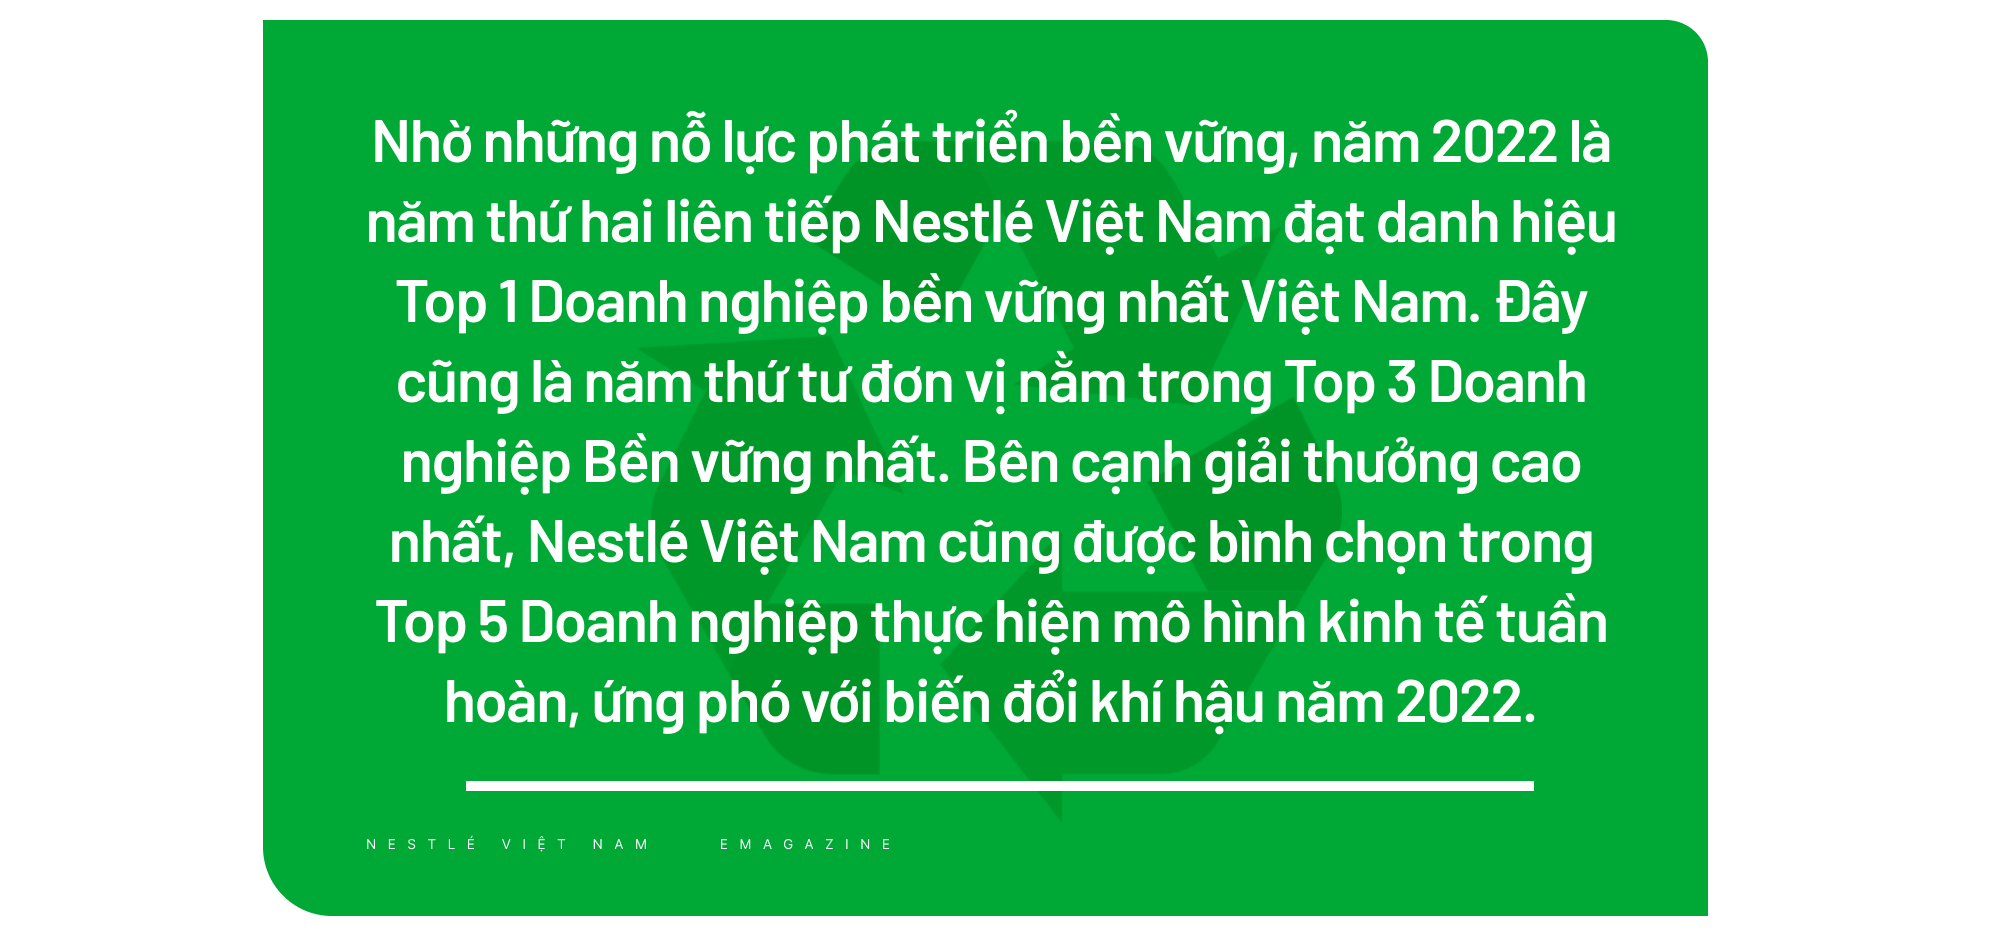 Nestlé Việt Nam áp dụng sáng kiến bao bì bền vững, xây dựng nền kinh tế tuần hoàn - Ảnh 8.